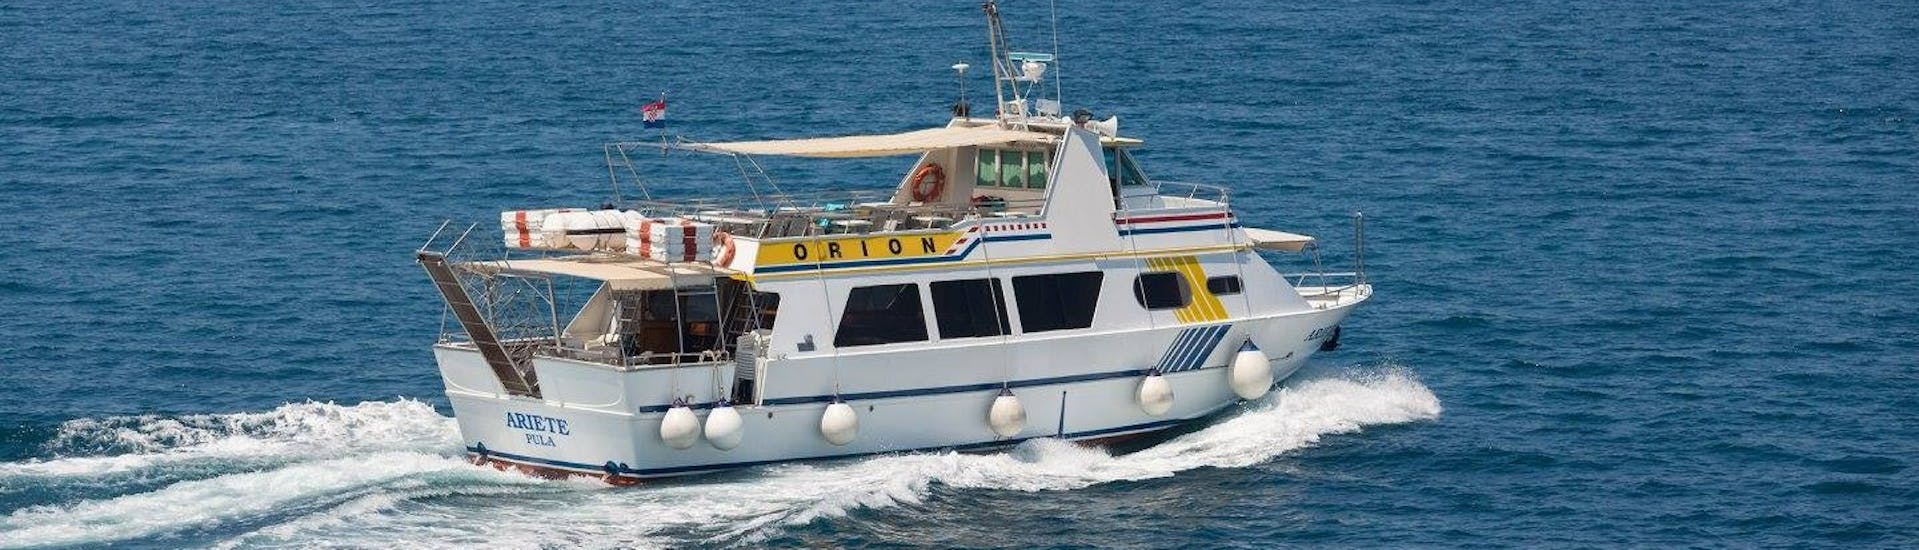 La barca della Orion Travel Pula durante la gita in barca da Pola a Rovigno.